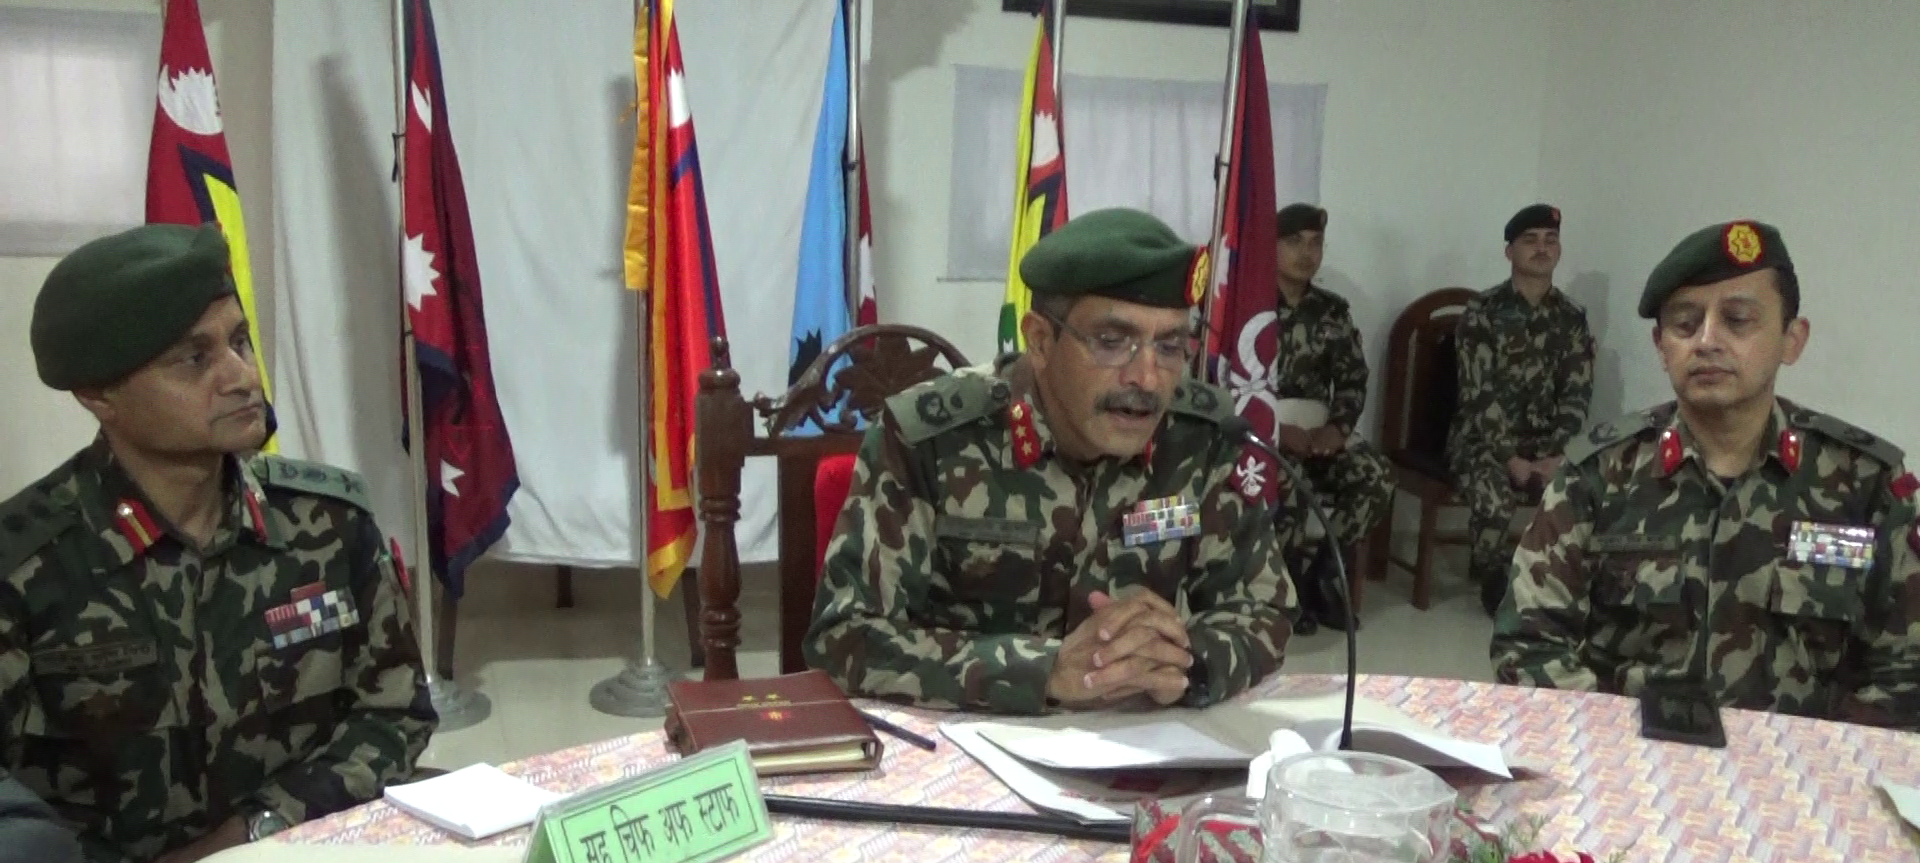 नेपाली सेनाले सुर्खेतमा ‘एकताका लागि दौड’ प्रतियोगिता आयोजना गर्दै